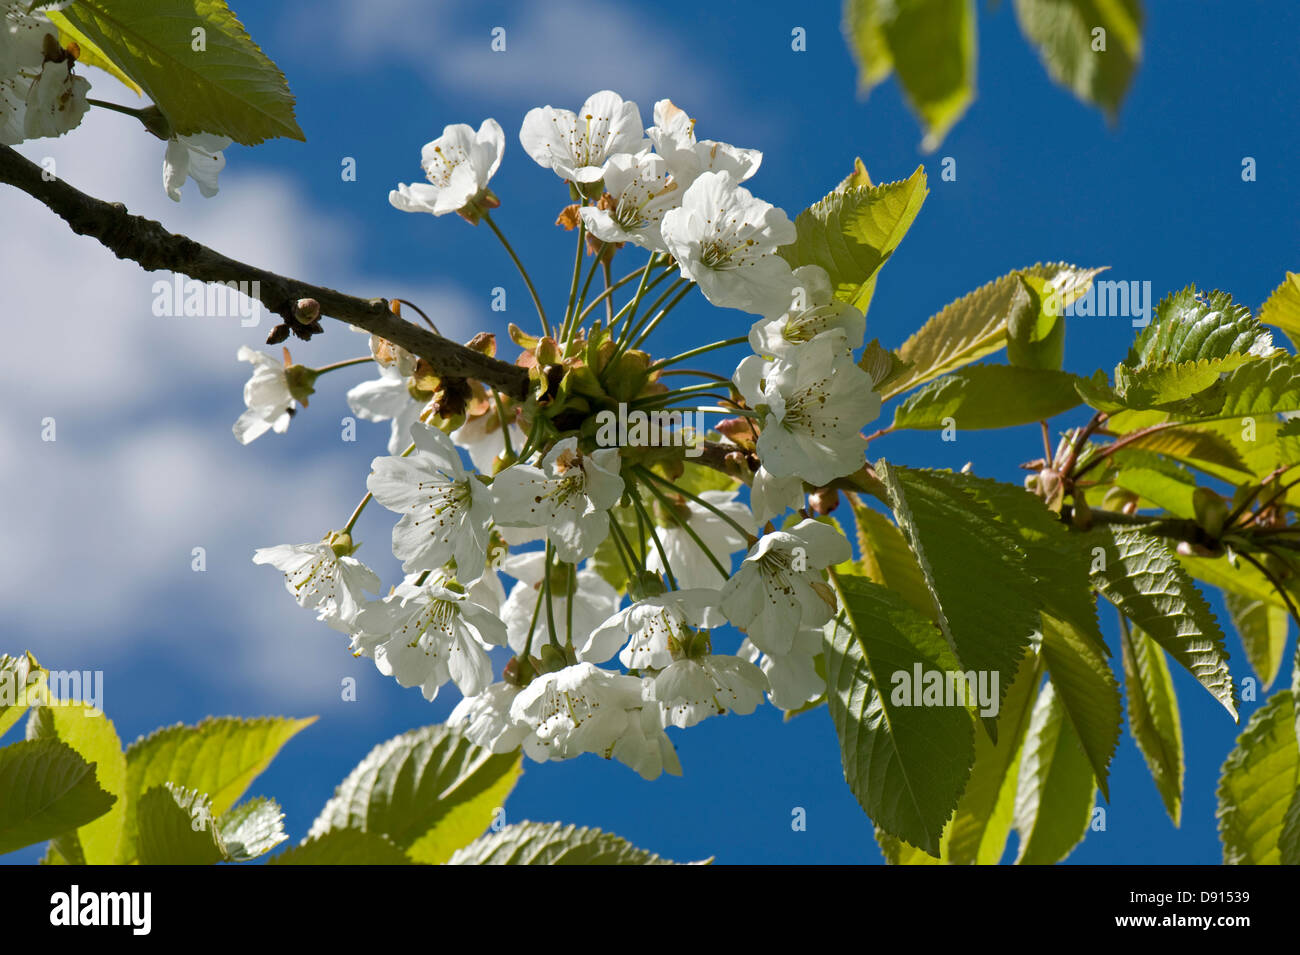 La fioritura dei ciliegi in Primavera con foglie giovani contro un cielo blu con la nuvola bianca Foto Stock